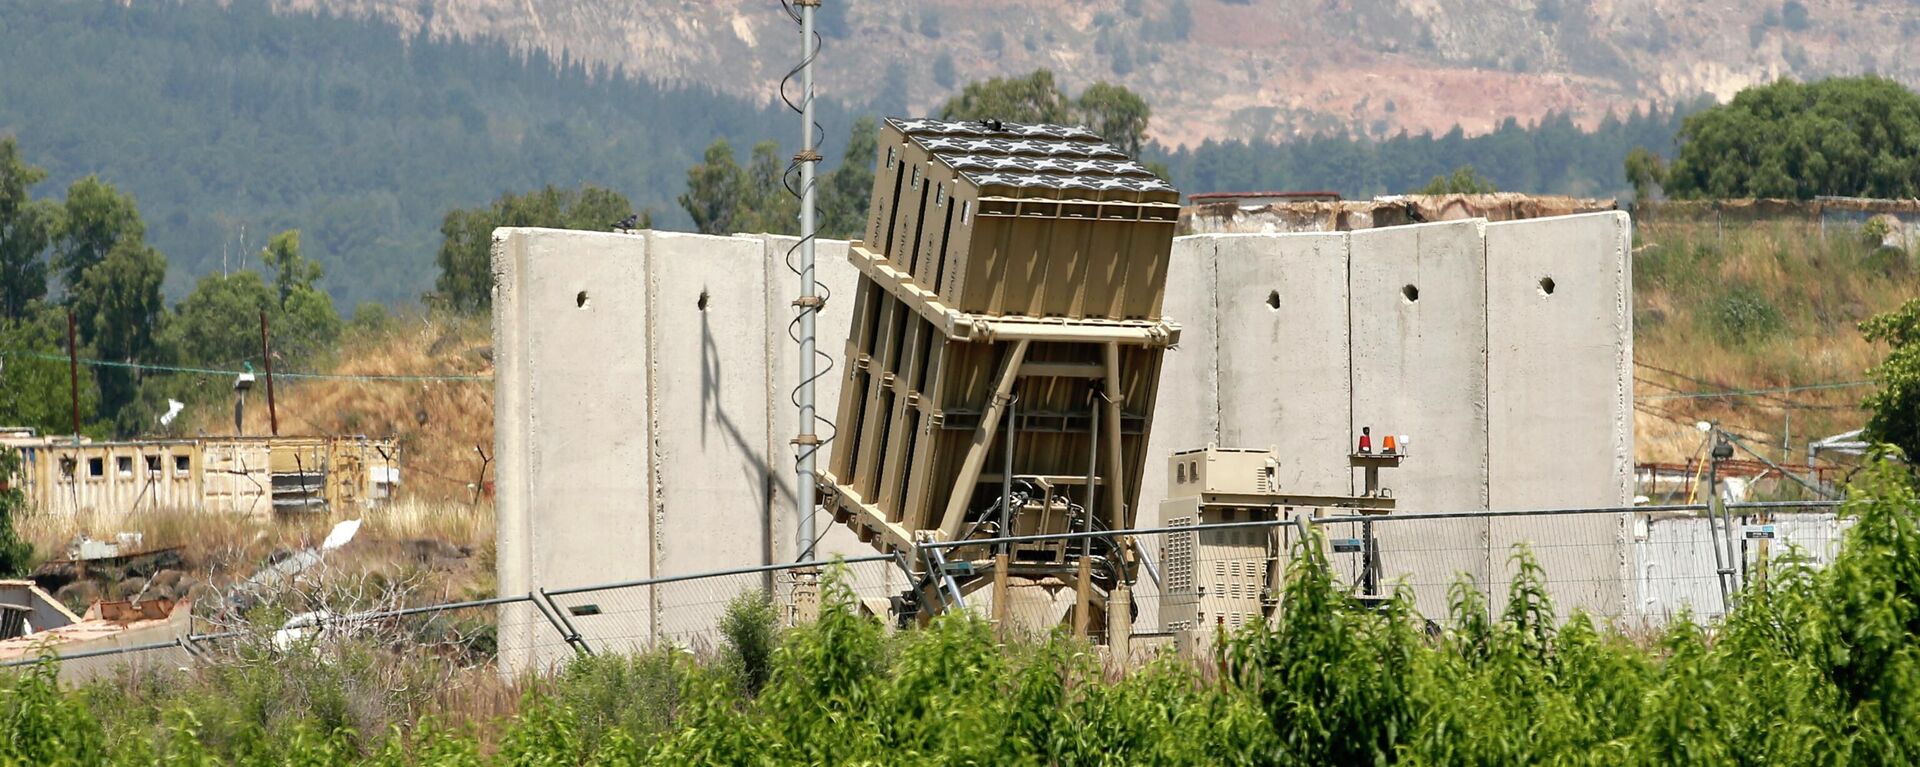 Bateria do sistema de defesa antiaérea Cúpula de Ferro nos arredores da cidade de Kiryat Shmona, Israel, perto da fronteira com Líbano, 19 de maio de 2022 - Sputnik Brasil, 1920, 21.06.2022